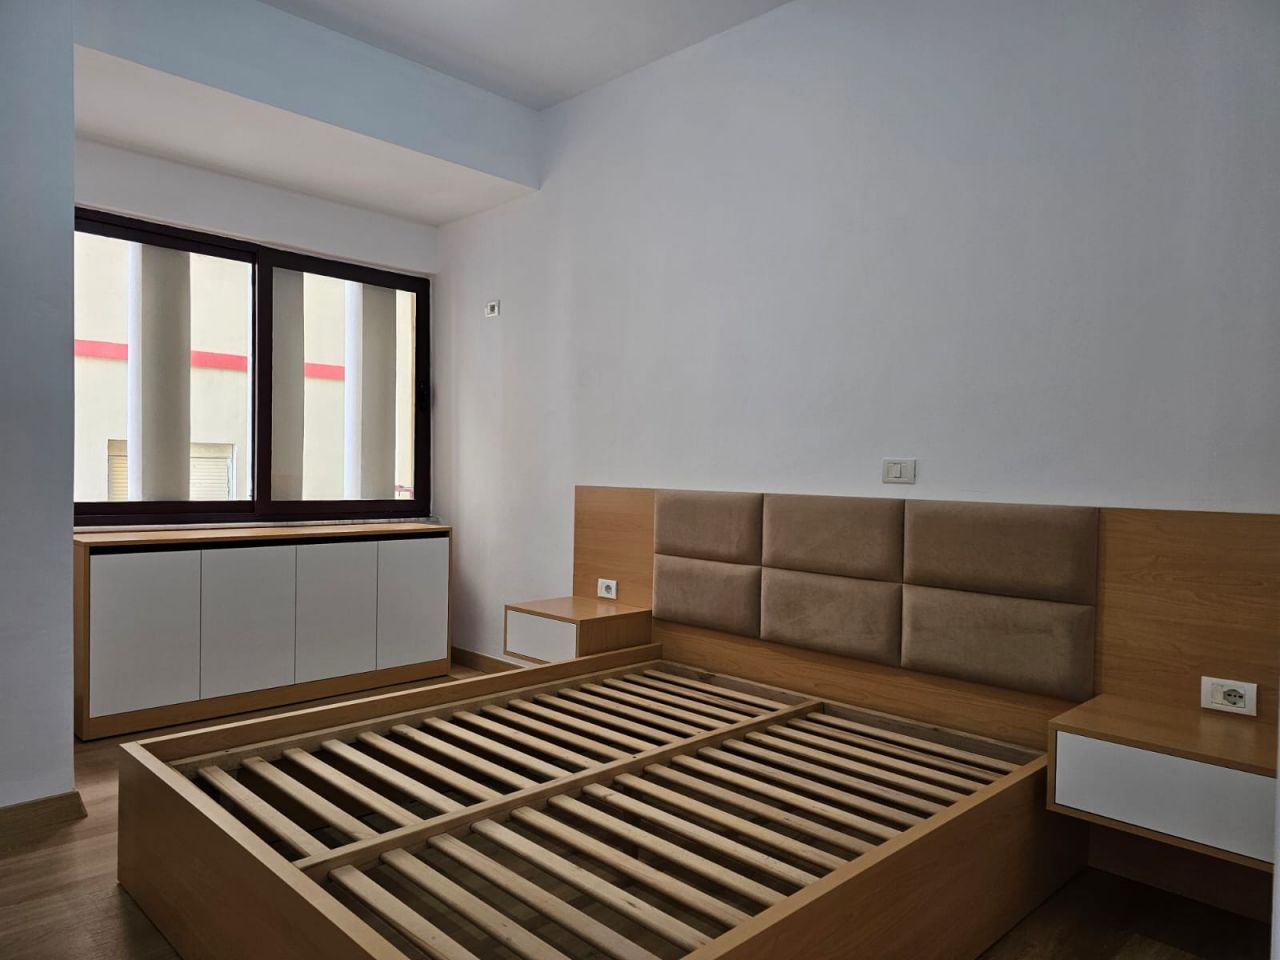 Eladó Egy Hálószobás Lakás Saranda Albániában Egy Jól Szervezett Környéken Csodálatos Kilátással A Tengerre